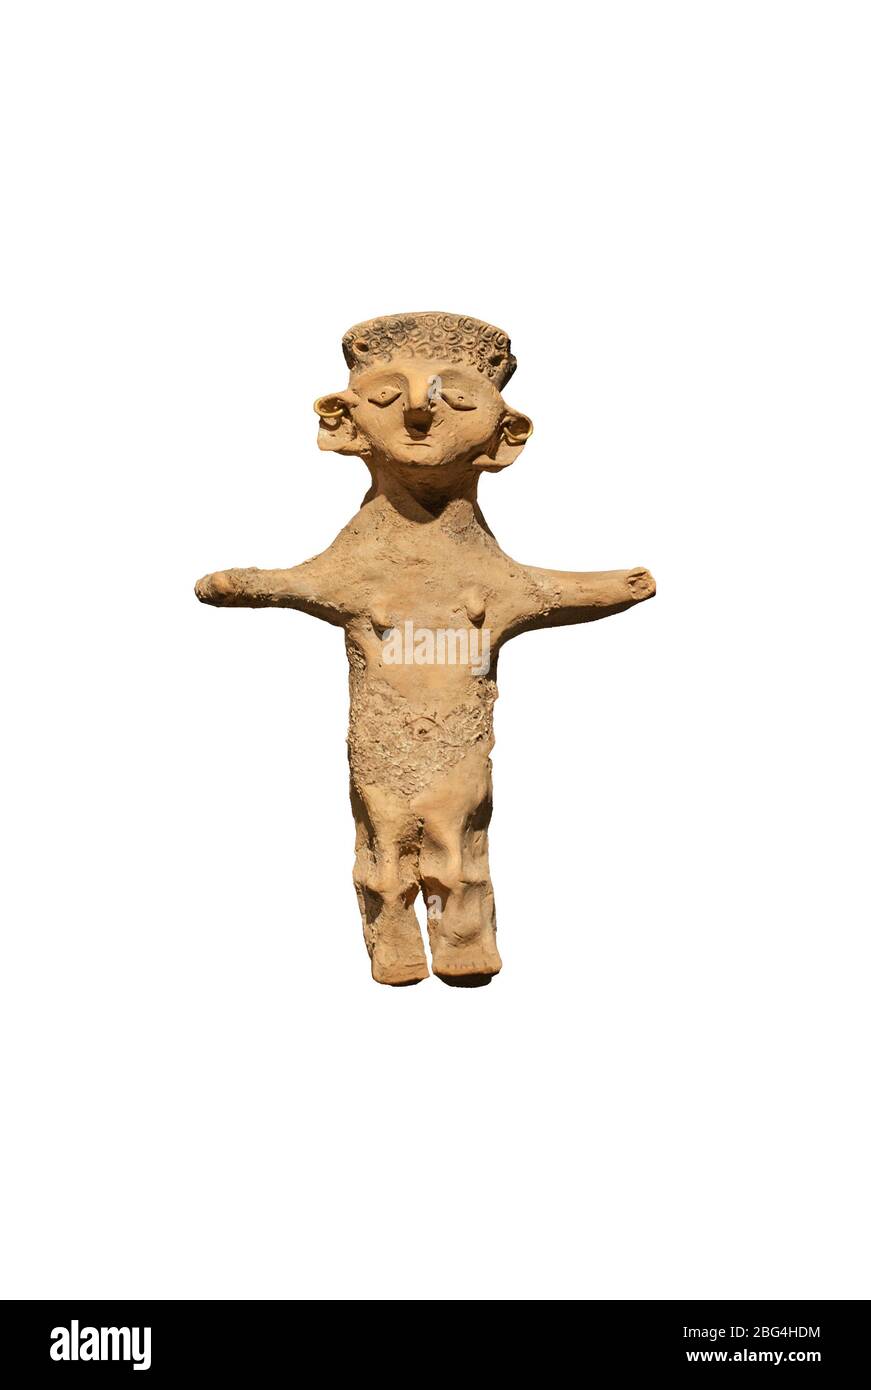 Barcellona, Spagna - 27 dicembre 2019: Statuetta in terracotta della dea cartaginese. IV secolo a.C., Puig des Molins, Ibiza. Museo catalano di Archeologia Foto Stock